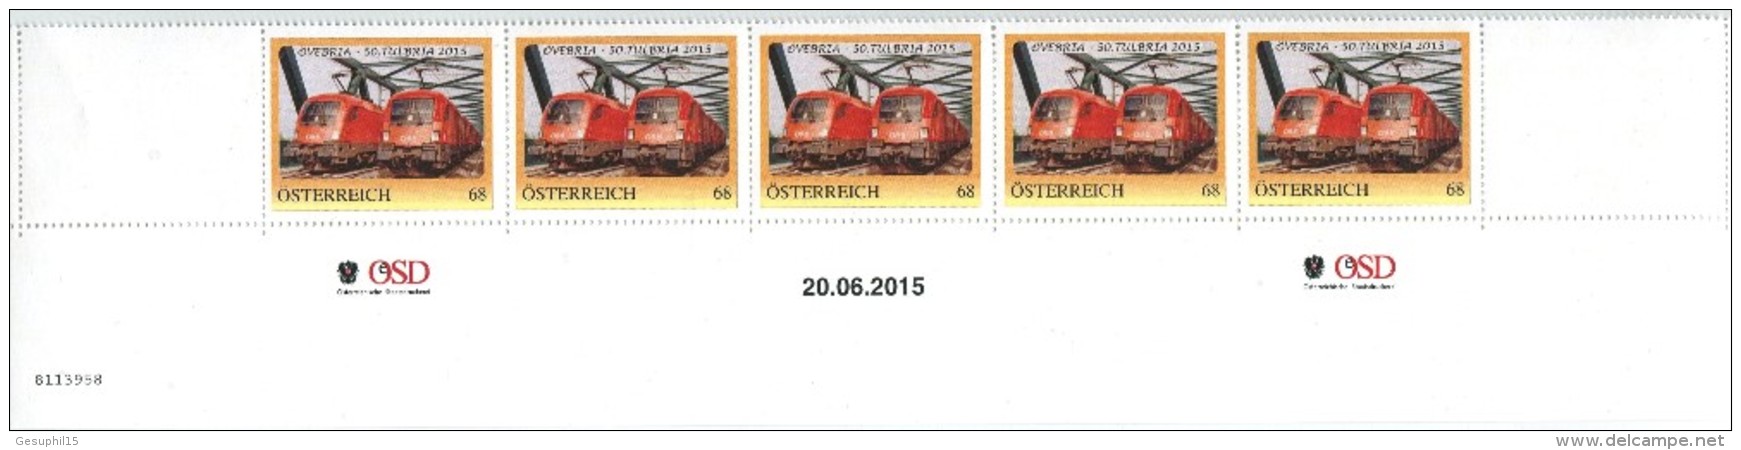 ÖSTERREICH / 8113958 / ÖVEBRIA - 50. TULBRIA 2015 / 5 Er Streifen Mit Nummer / Postfrisch / ** / MNH - Personalisierte Briefmarken